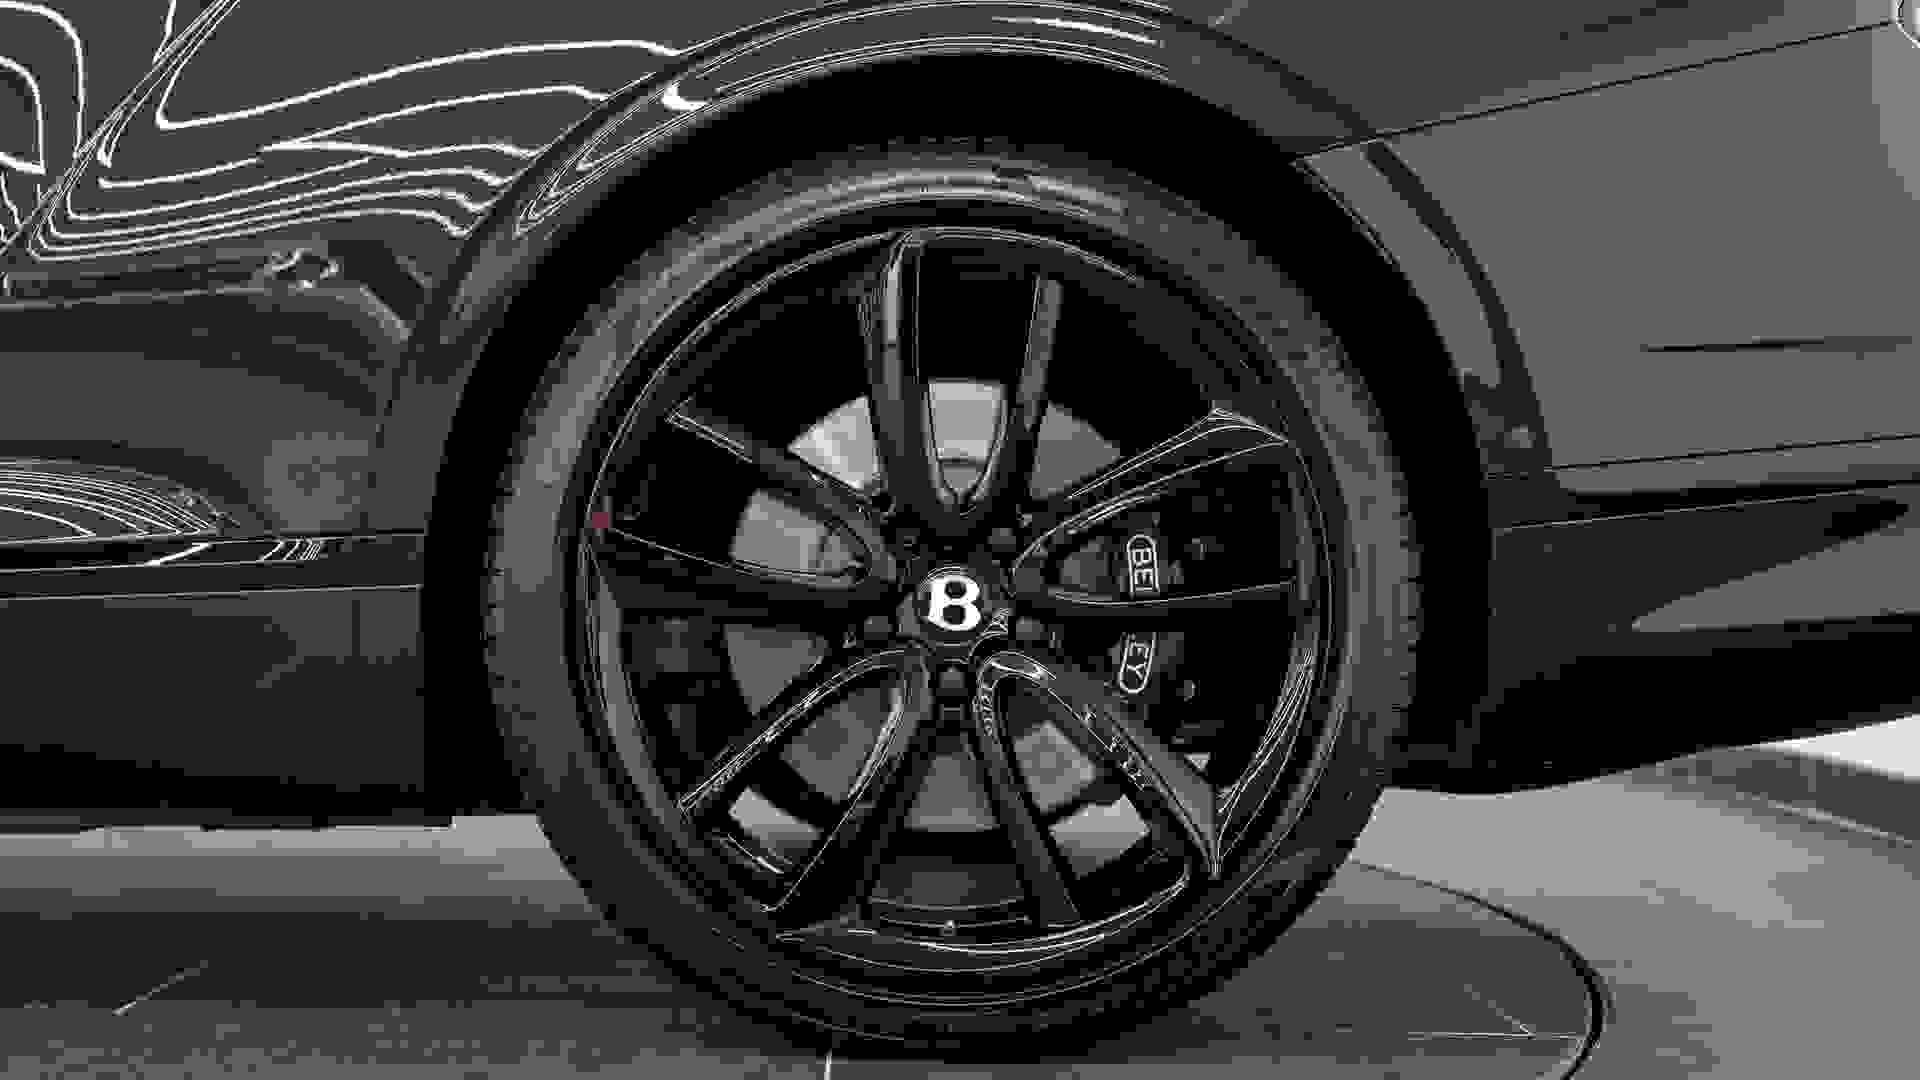 Bentley Continental GTC Photo 045e2348-babe-4702-a2b0-cb676e267ccd.jpg